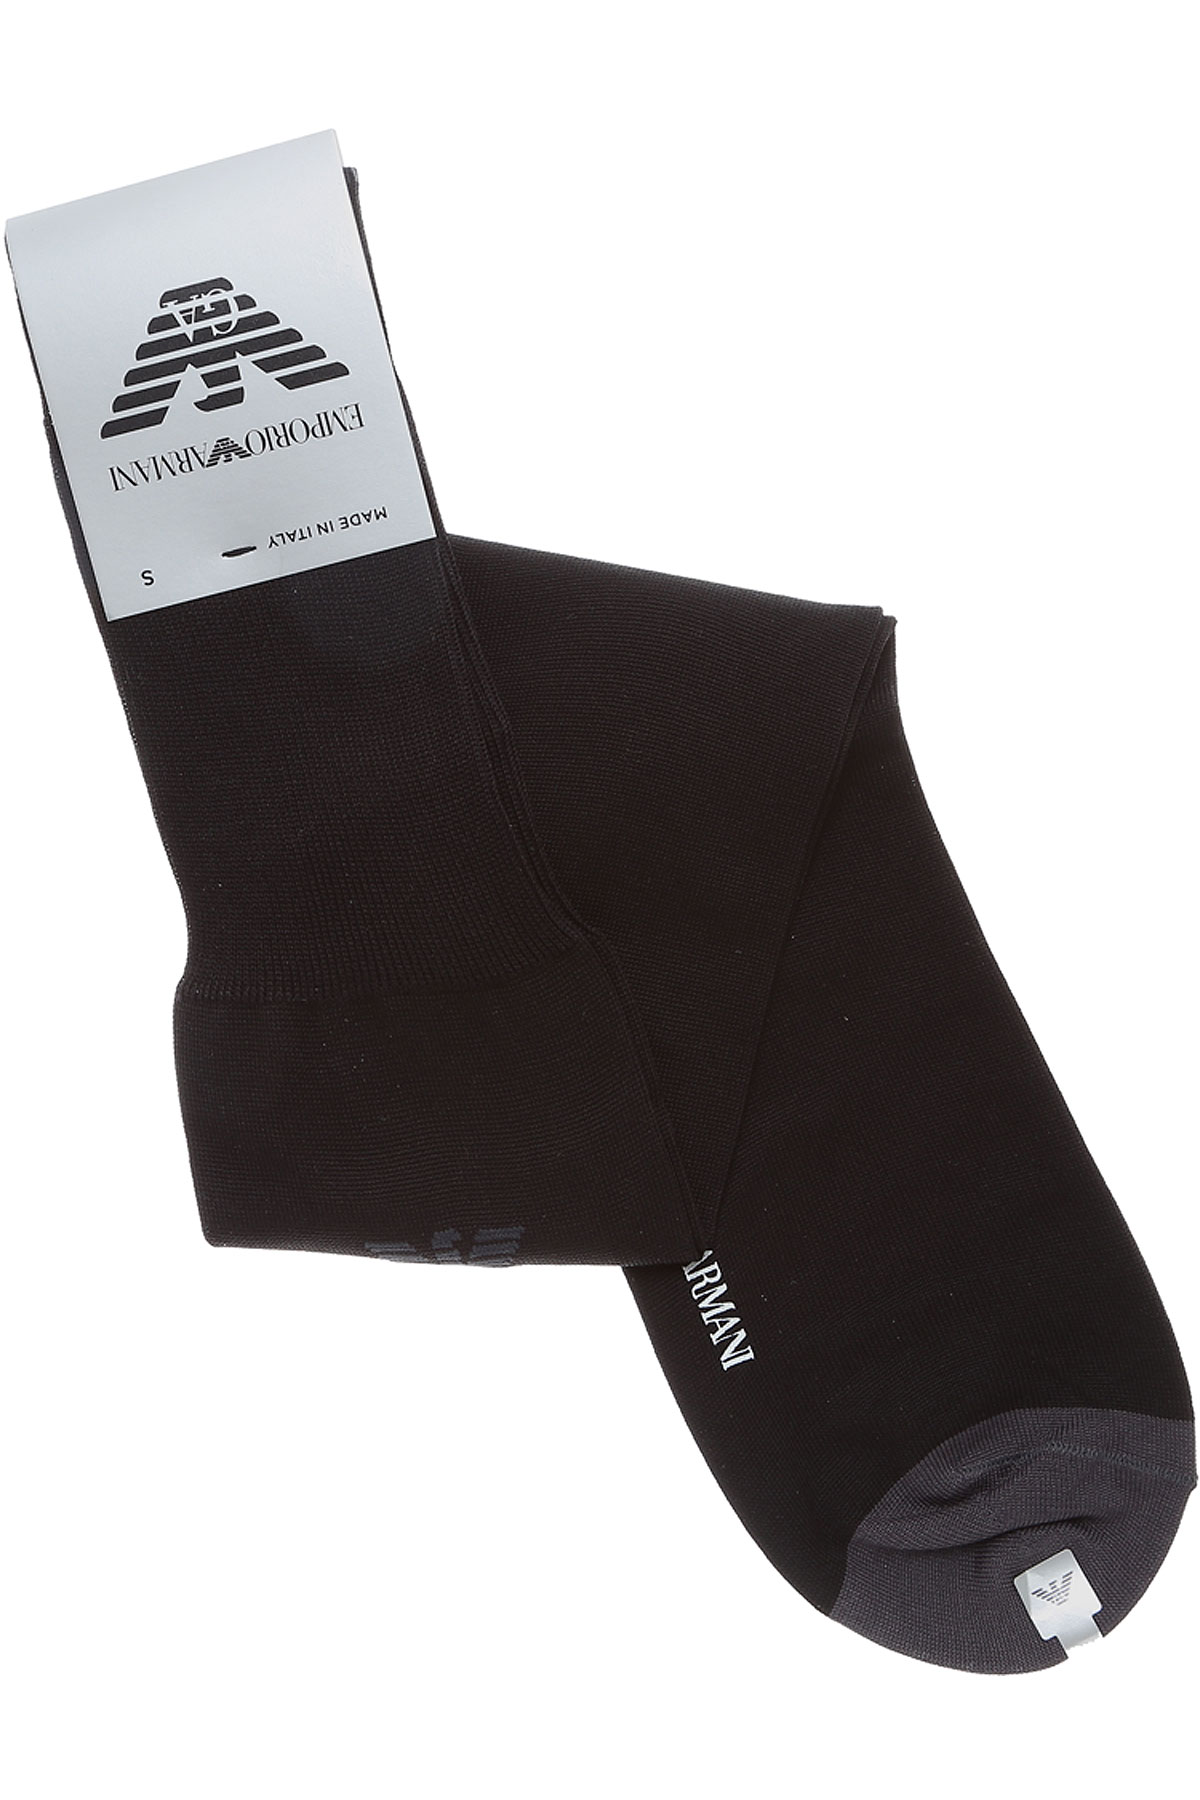 Mens Underwear Emporio Armani Socks, Style code: 300001-6a502-00020